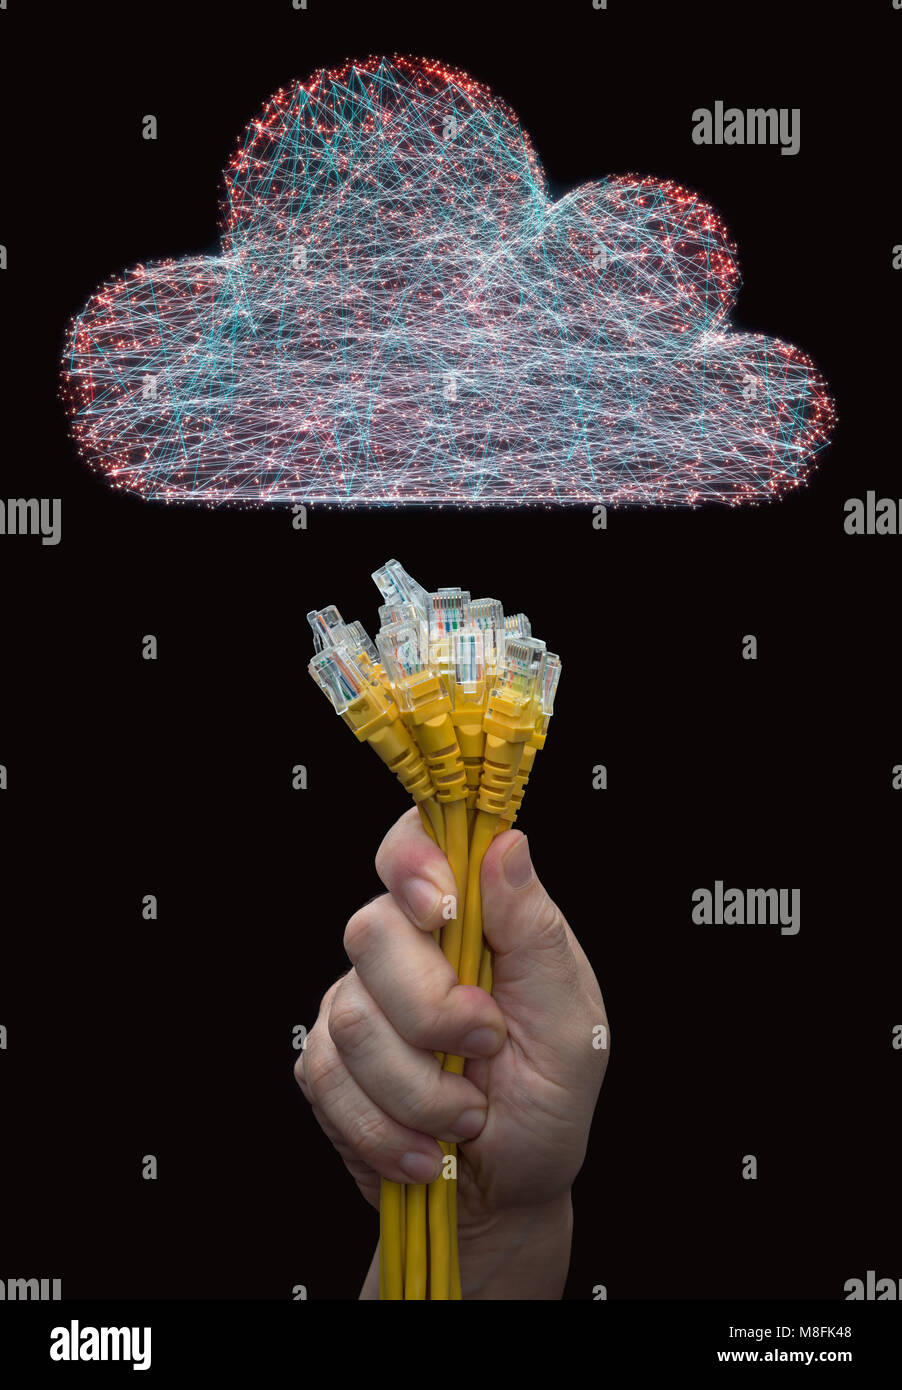 Ilustración 3D. Imagen concepto de cloud computing. Las uniones entre los puntos formando una nube. Foto de stock